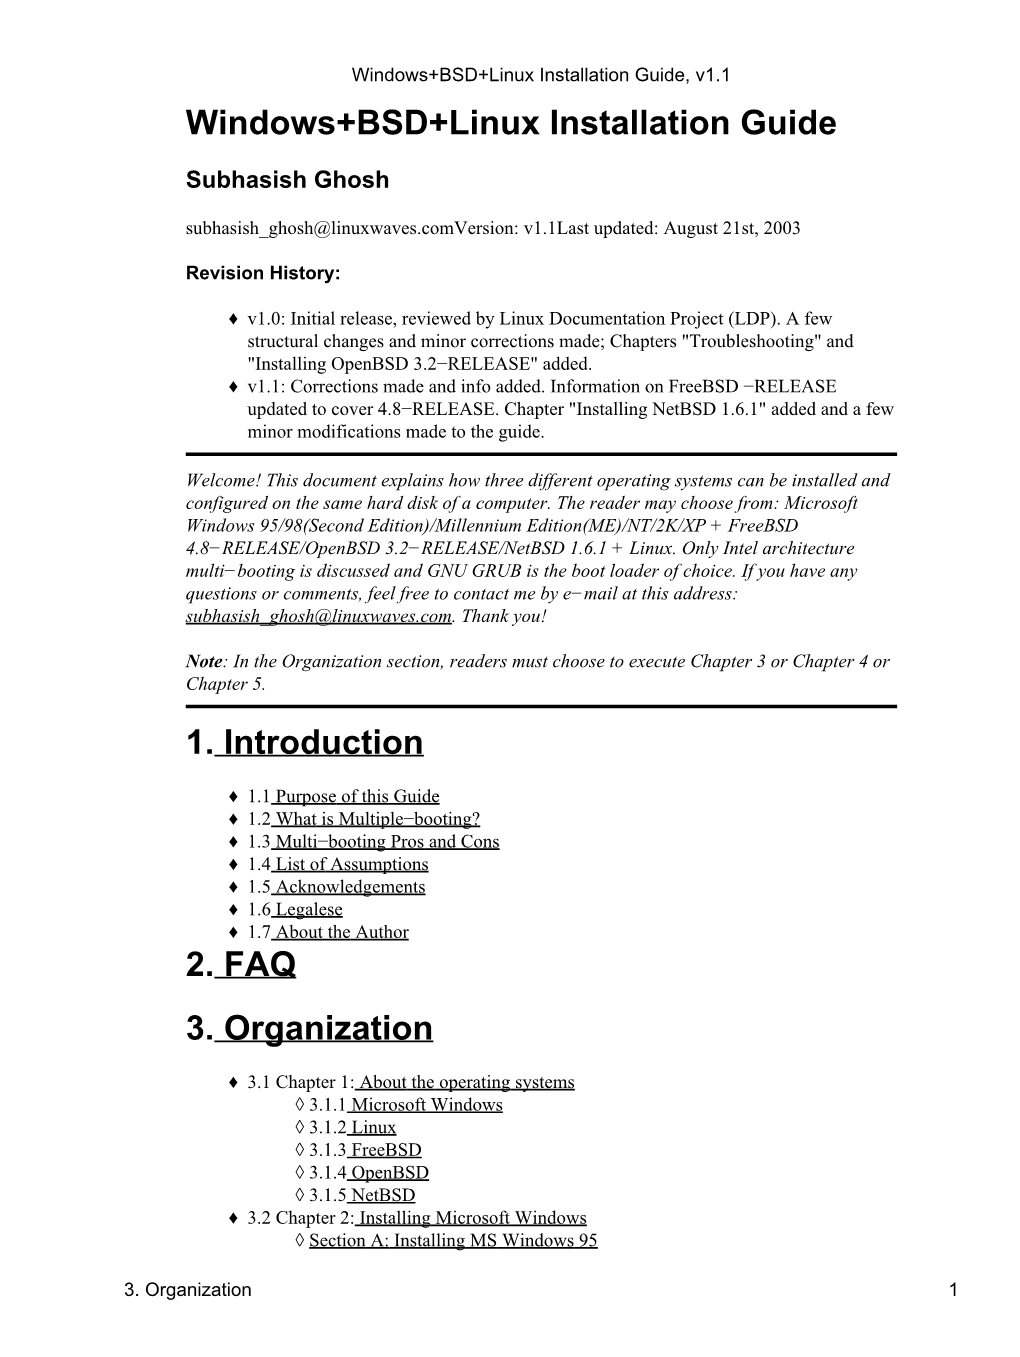 Windows+BSD+Linux Installation Guide, V1.1 Windows+BSD+Linux Installation Guide